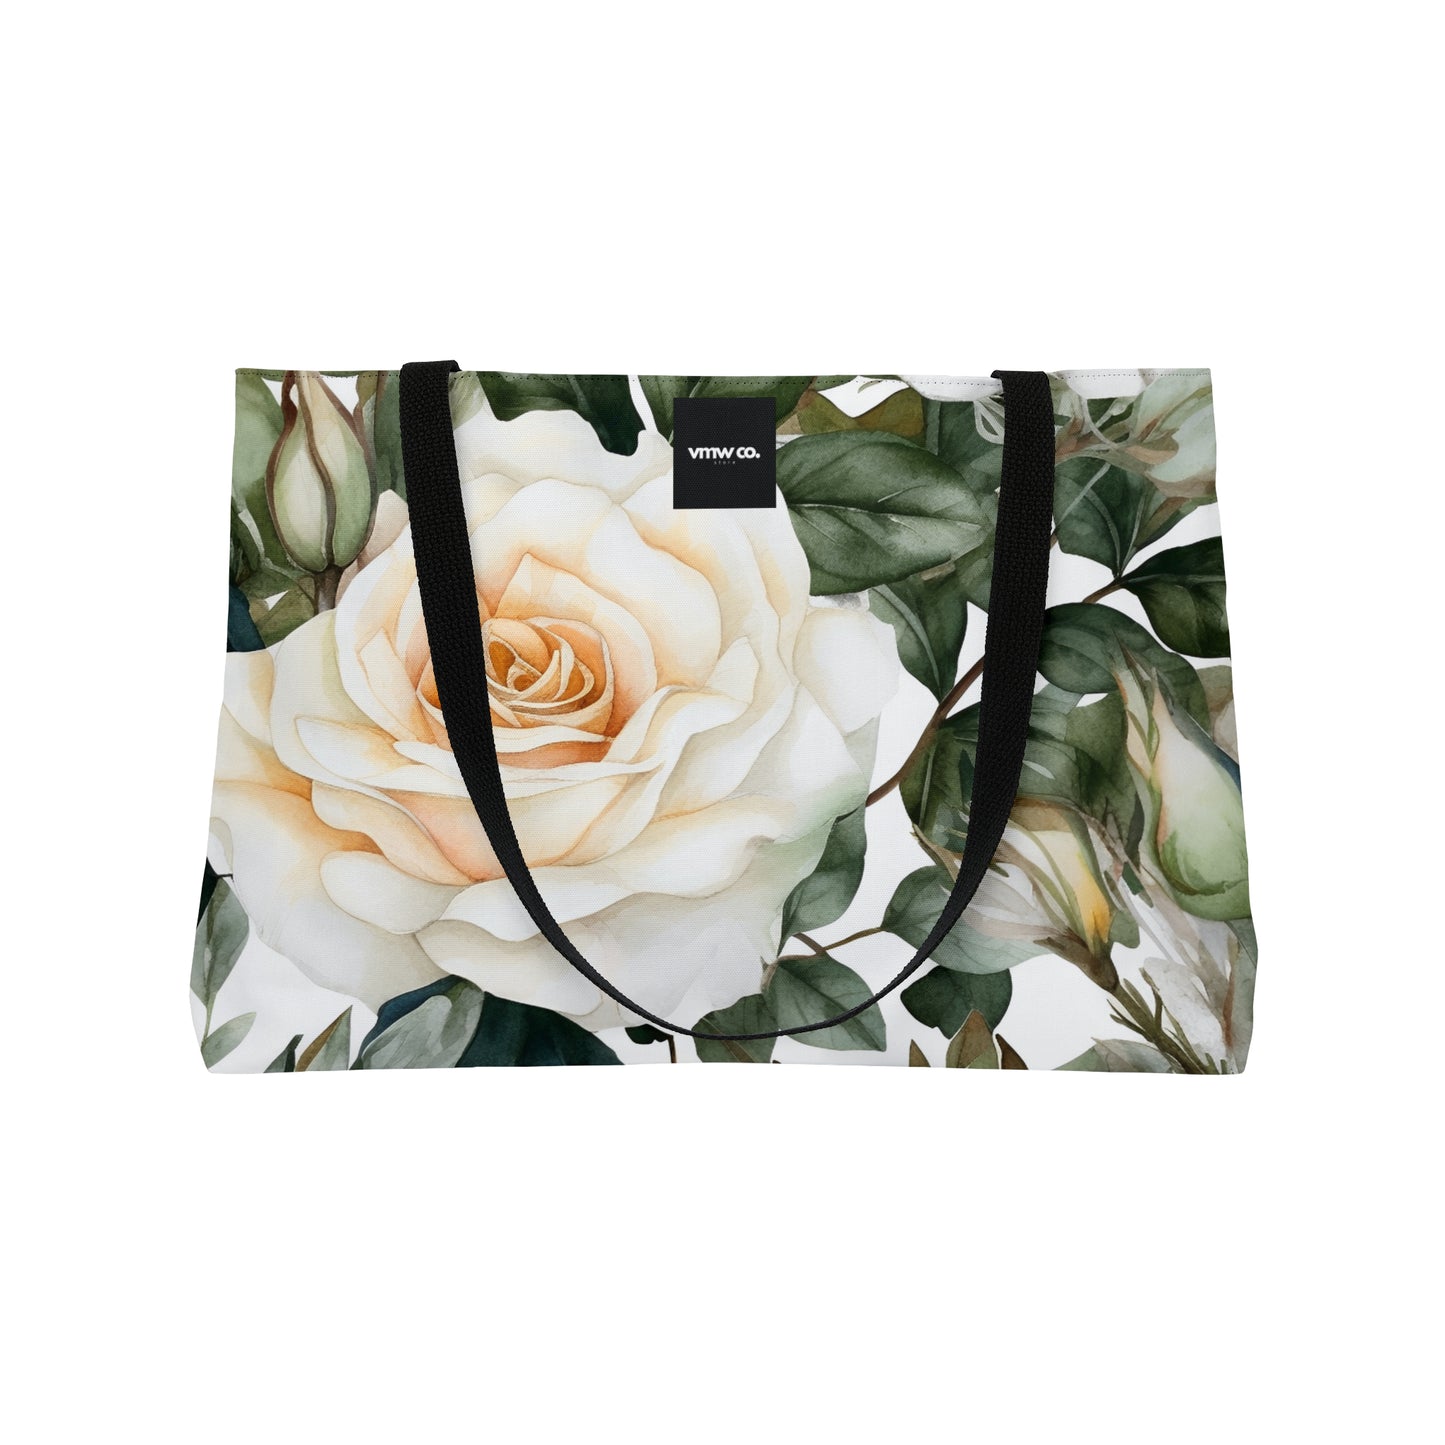 White Rose Floral Pattern Weekender Tote Bag